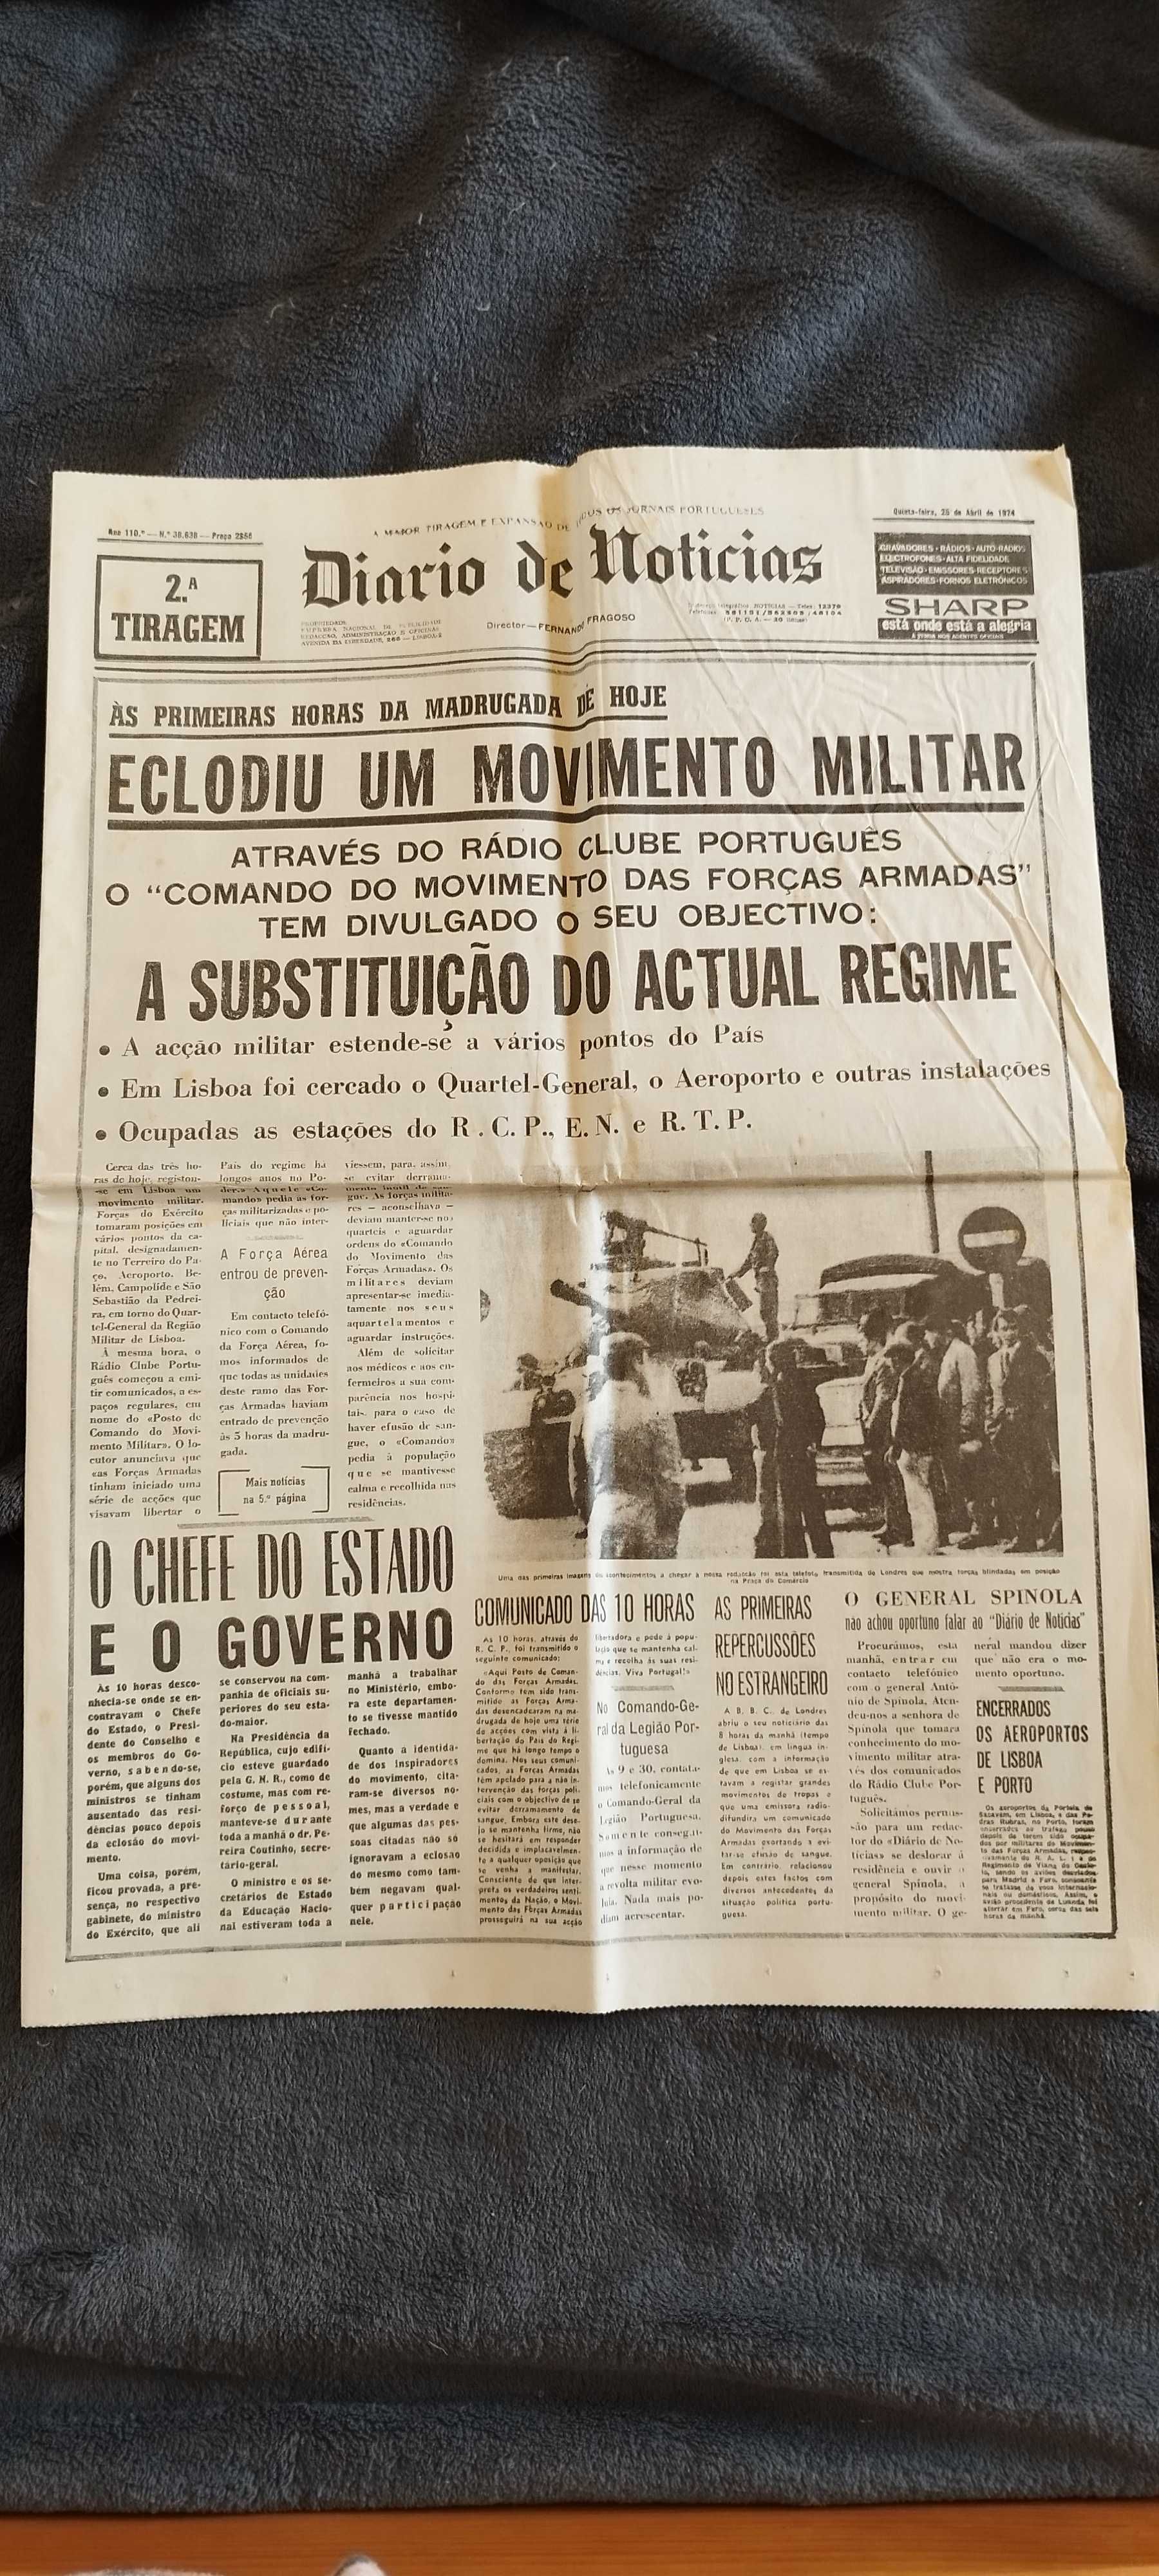 Diário de notícias 25 abril 1974